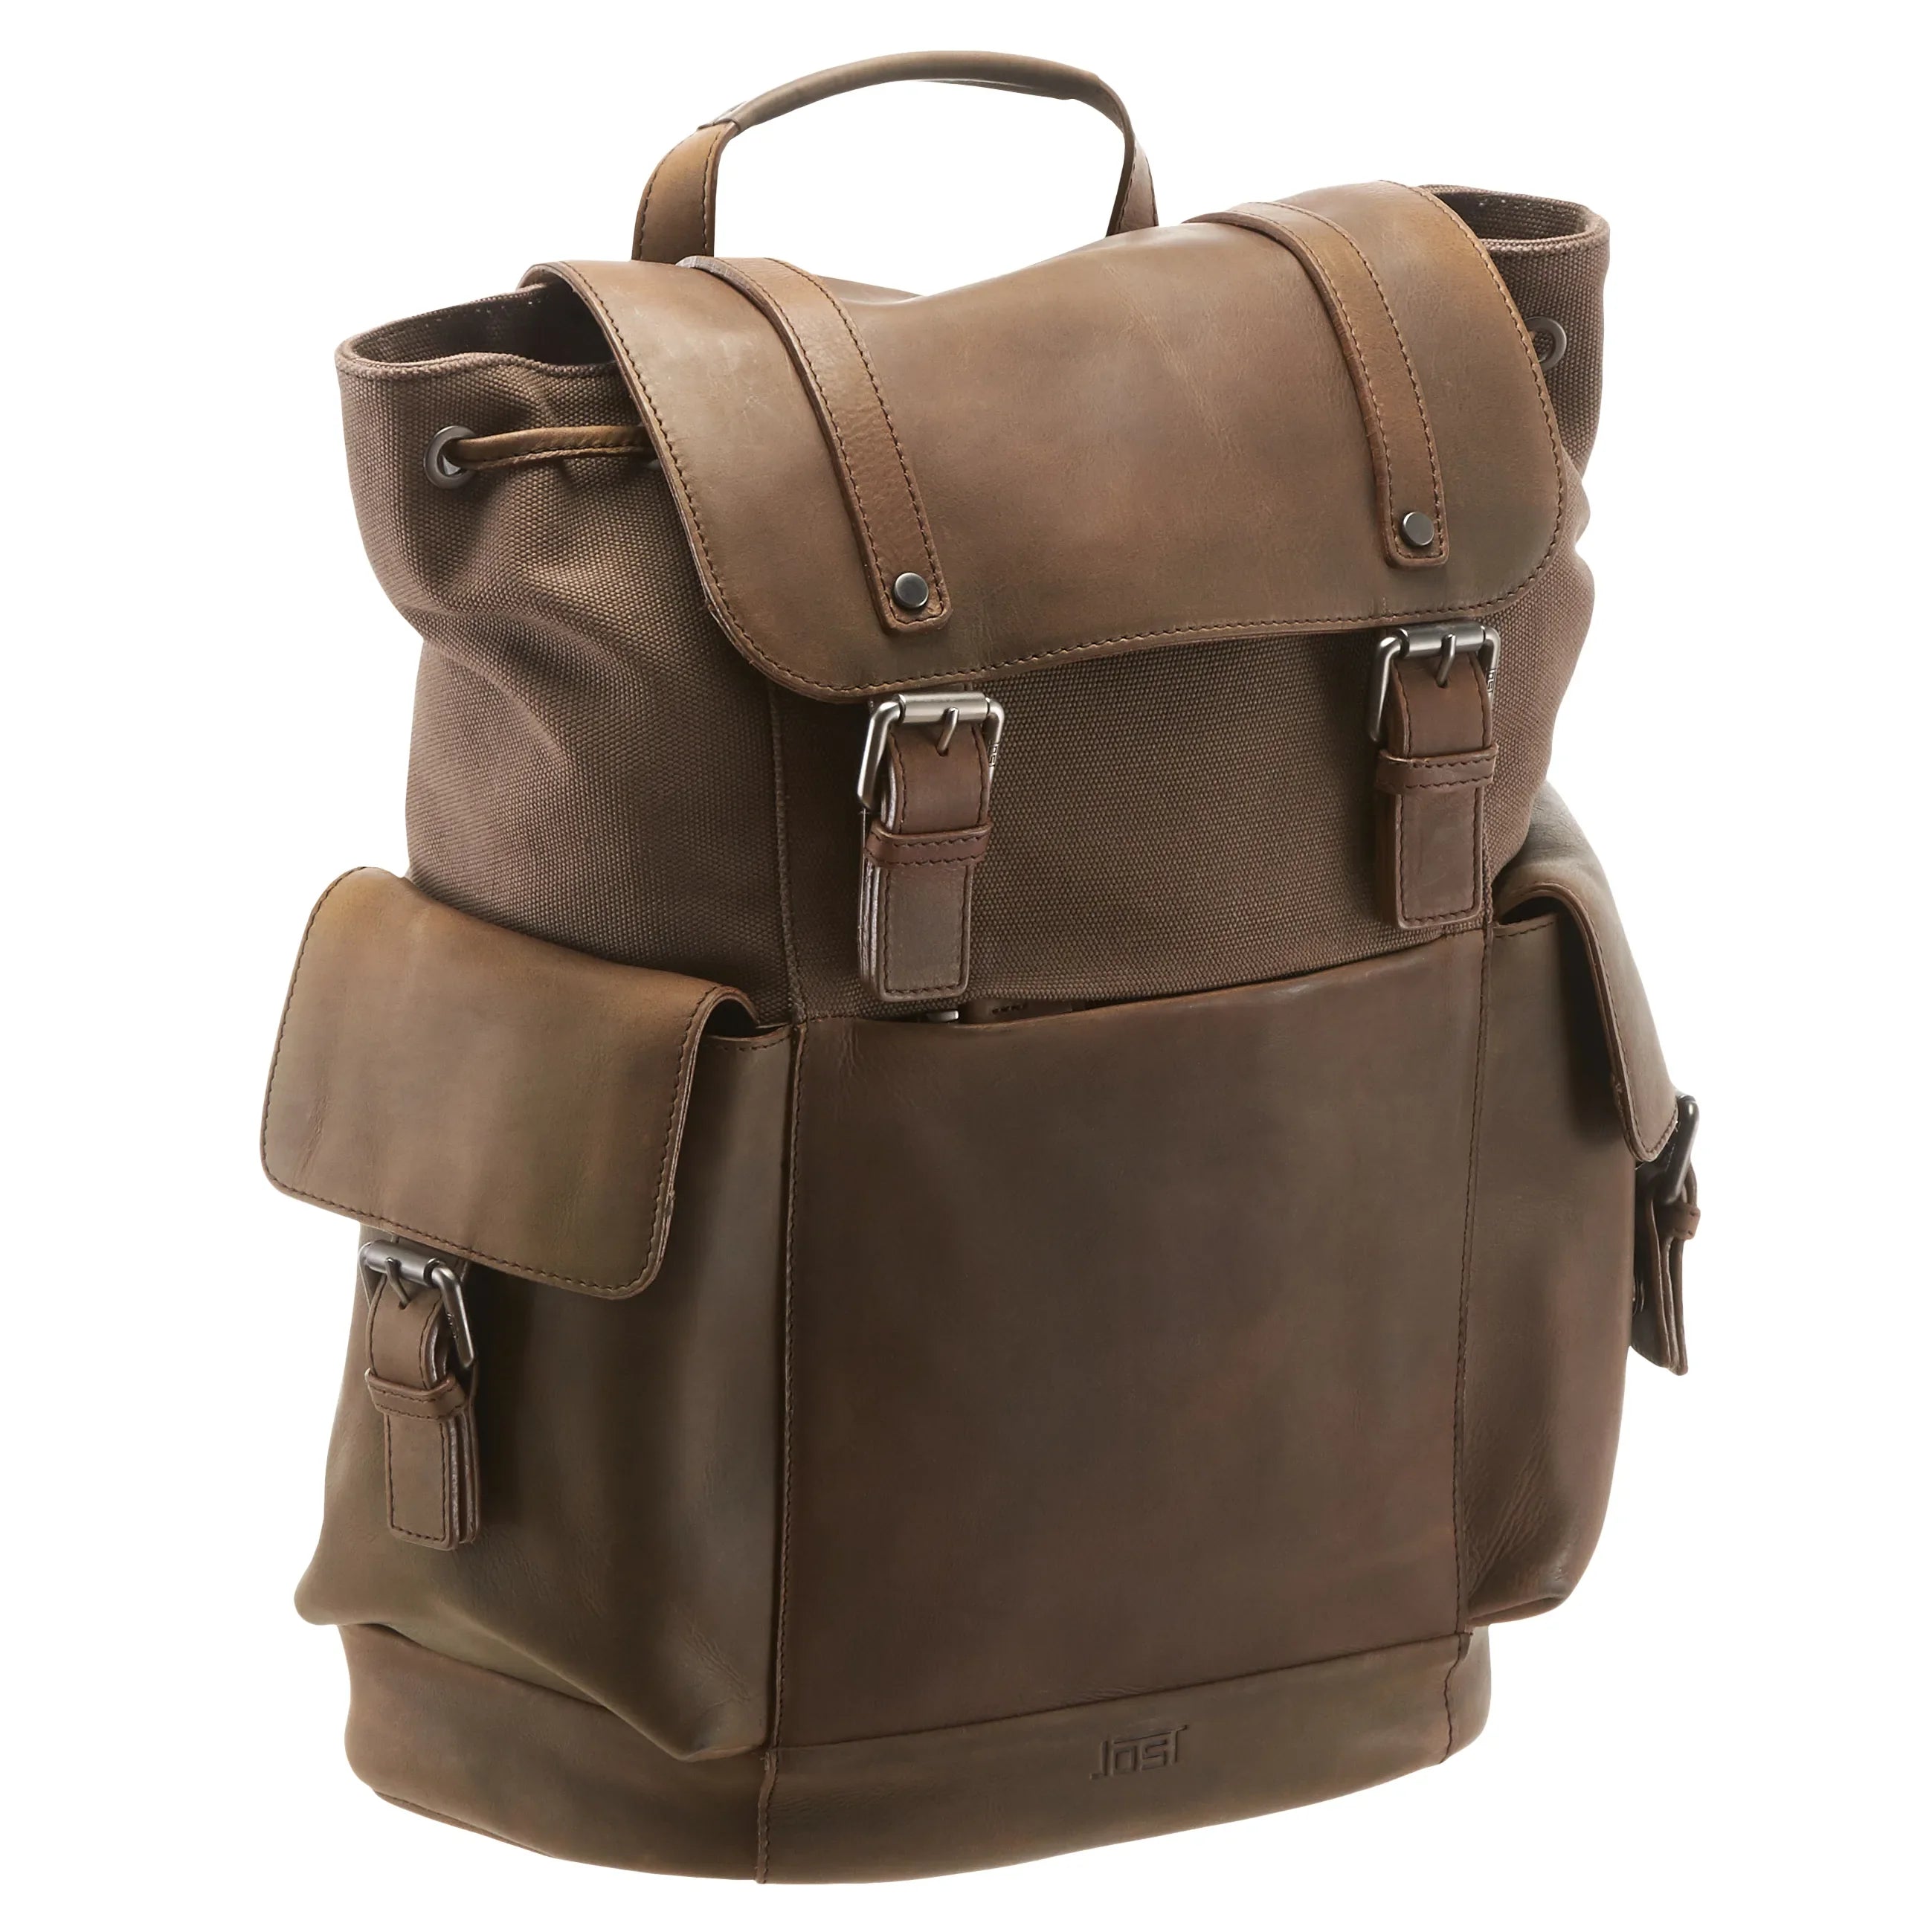 Jost Salo sac à dos avec compartiment pour ordinateur portable 45 cm - marron